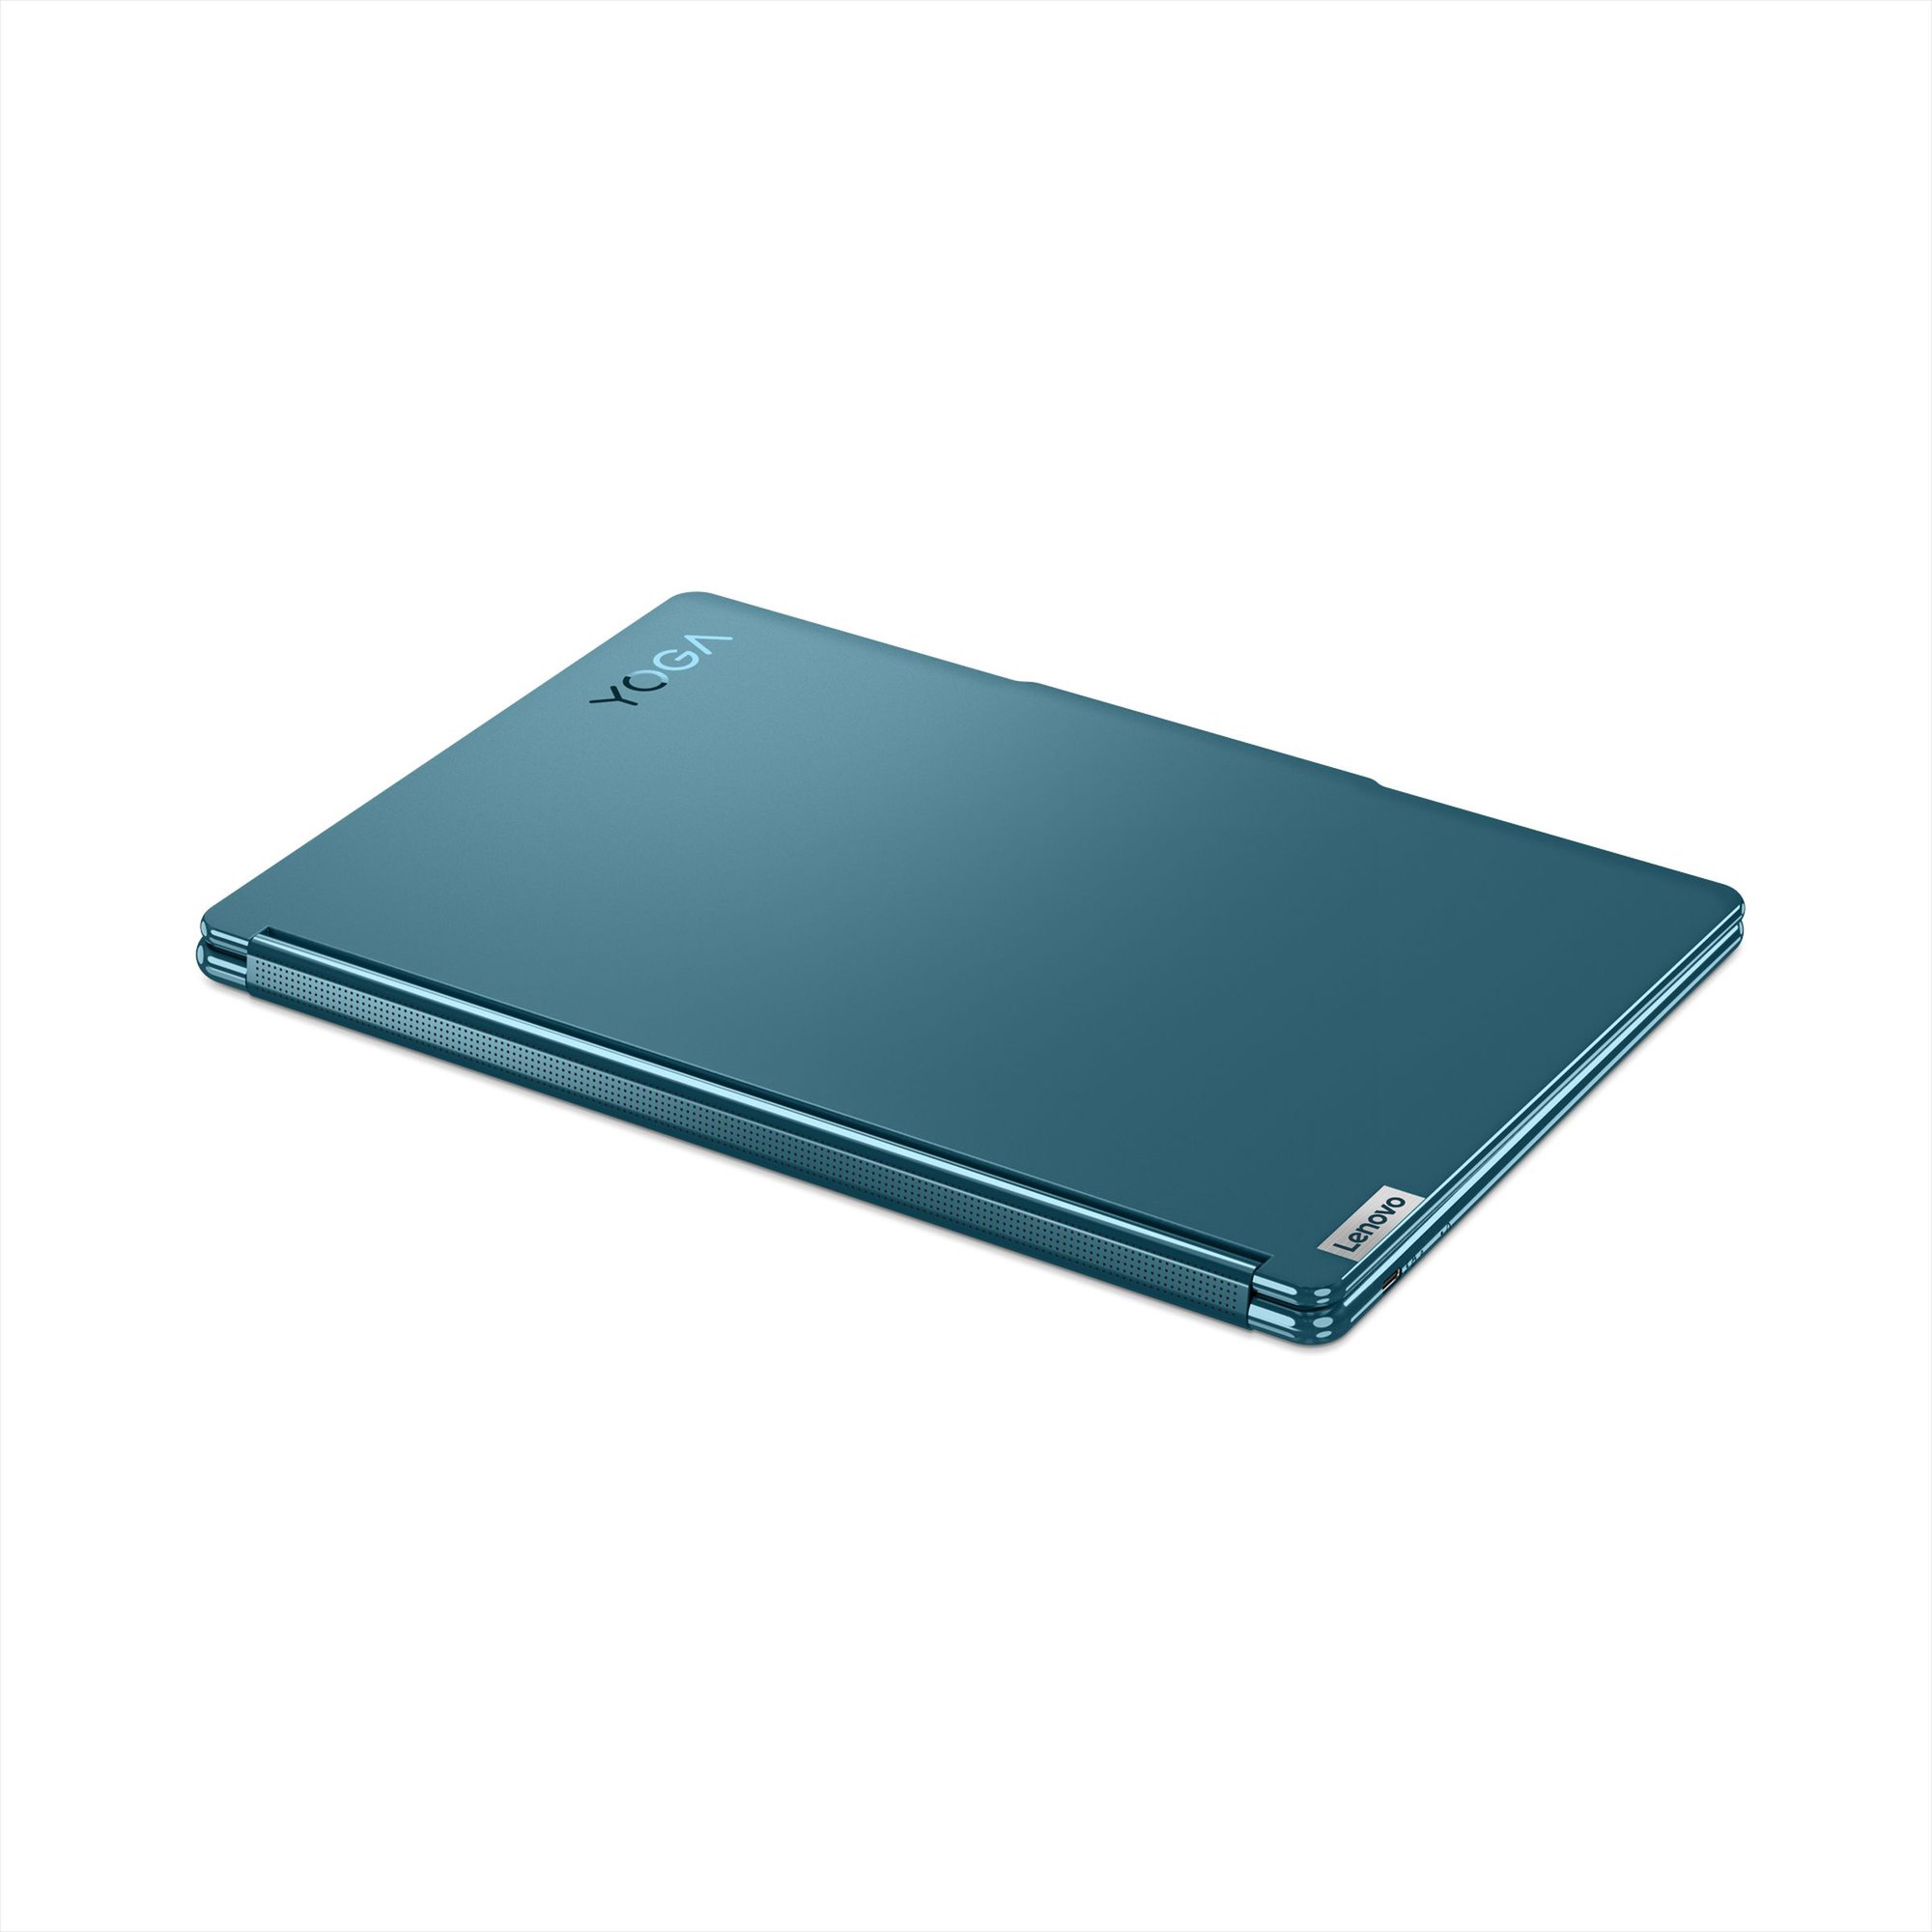 Lenovo ra mắt chiếc laptop Yoga Book 9i sở hữu 2 màn hình OLED 13,3 inch